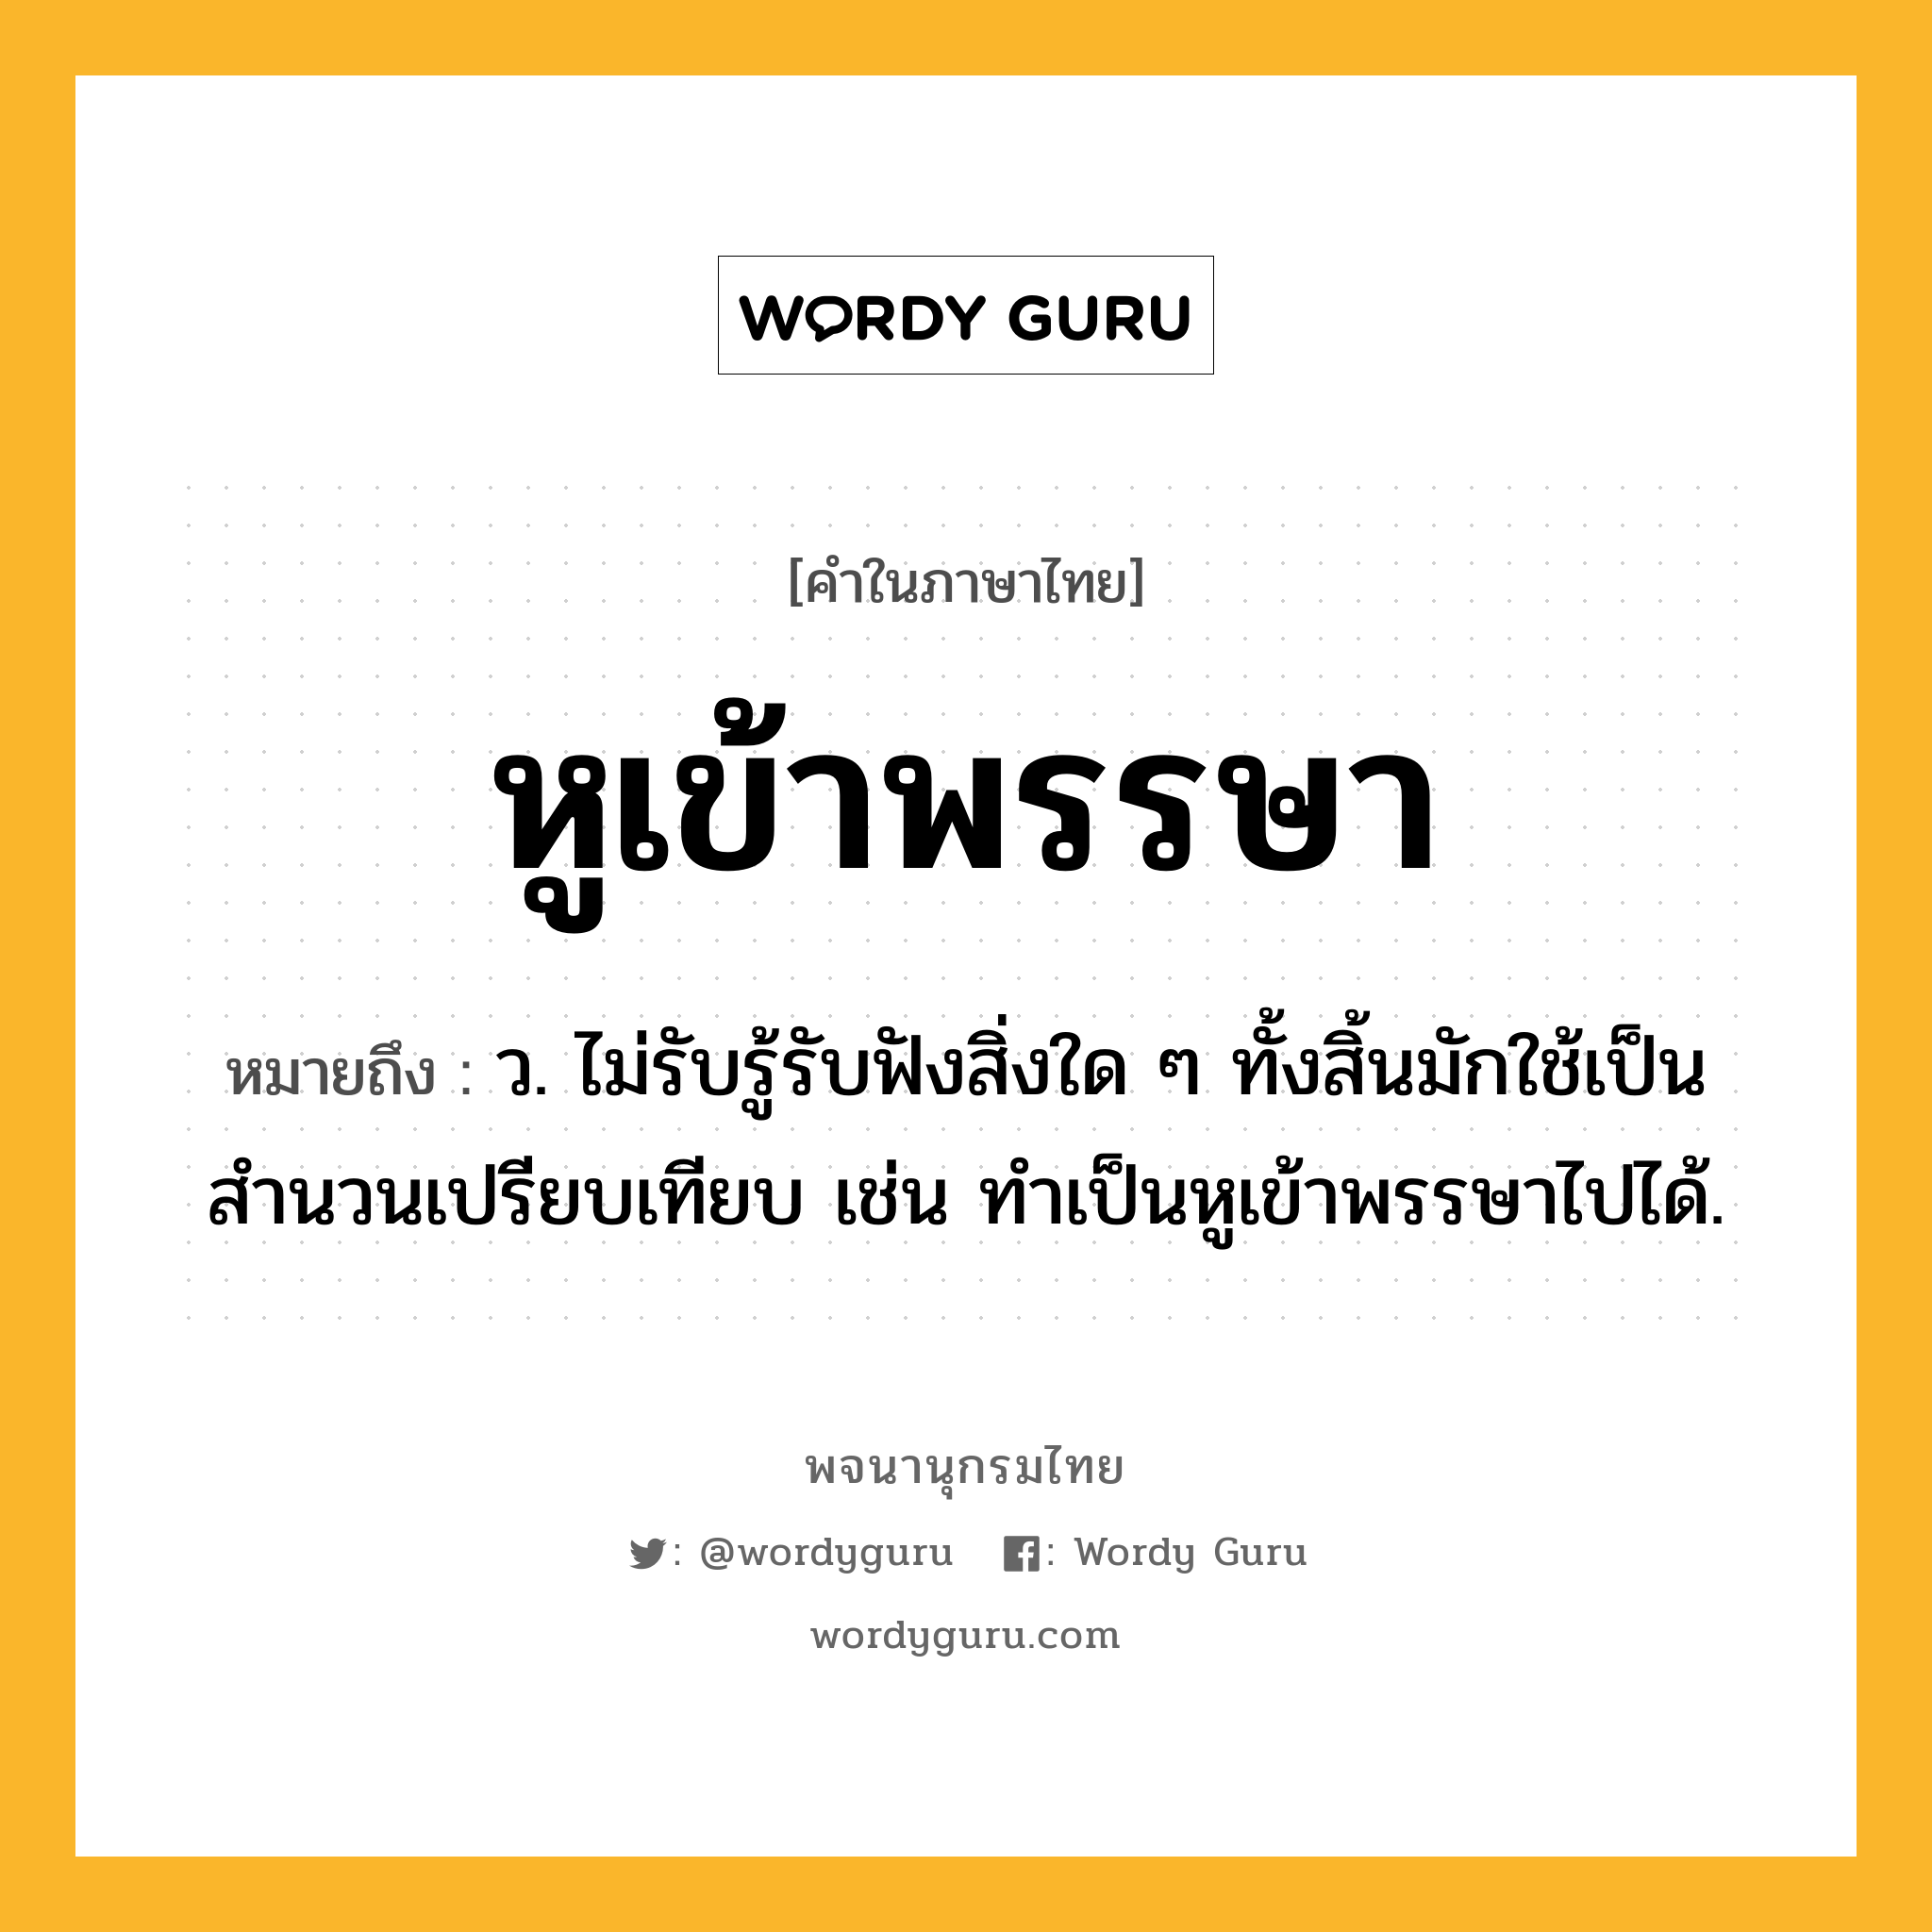 หูเข้าพรรษา ความหมาย หมายถึงอะไร?, คำในภาษาไทย หูเข้าพรรษา หมายถึง ว. ไม่รับรู้รับฟังสิ่งใด ๆ ทั้งสิ้นมักใช้เป็นสำนวนเปรียบเทียบ เช่น ทำเป็นหูเข้าพรรษาไปได้.